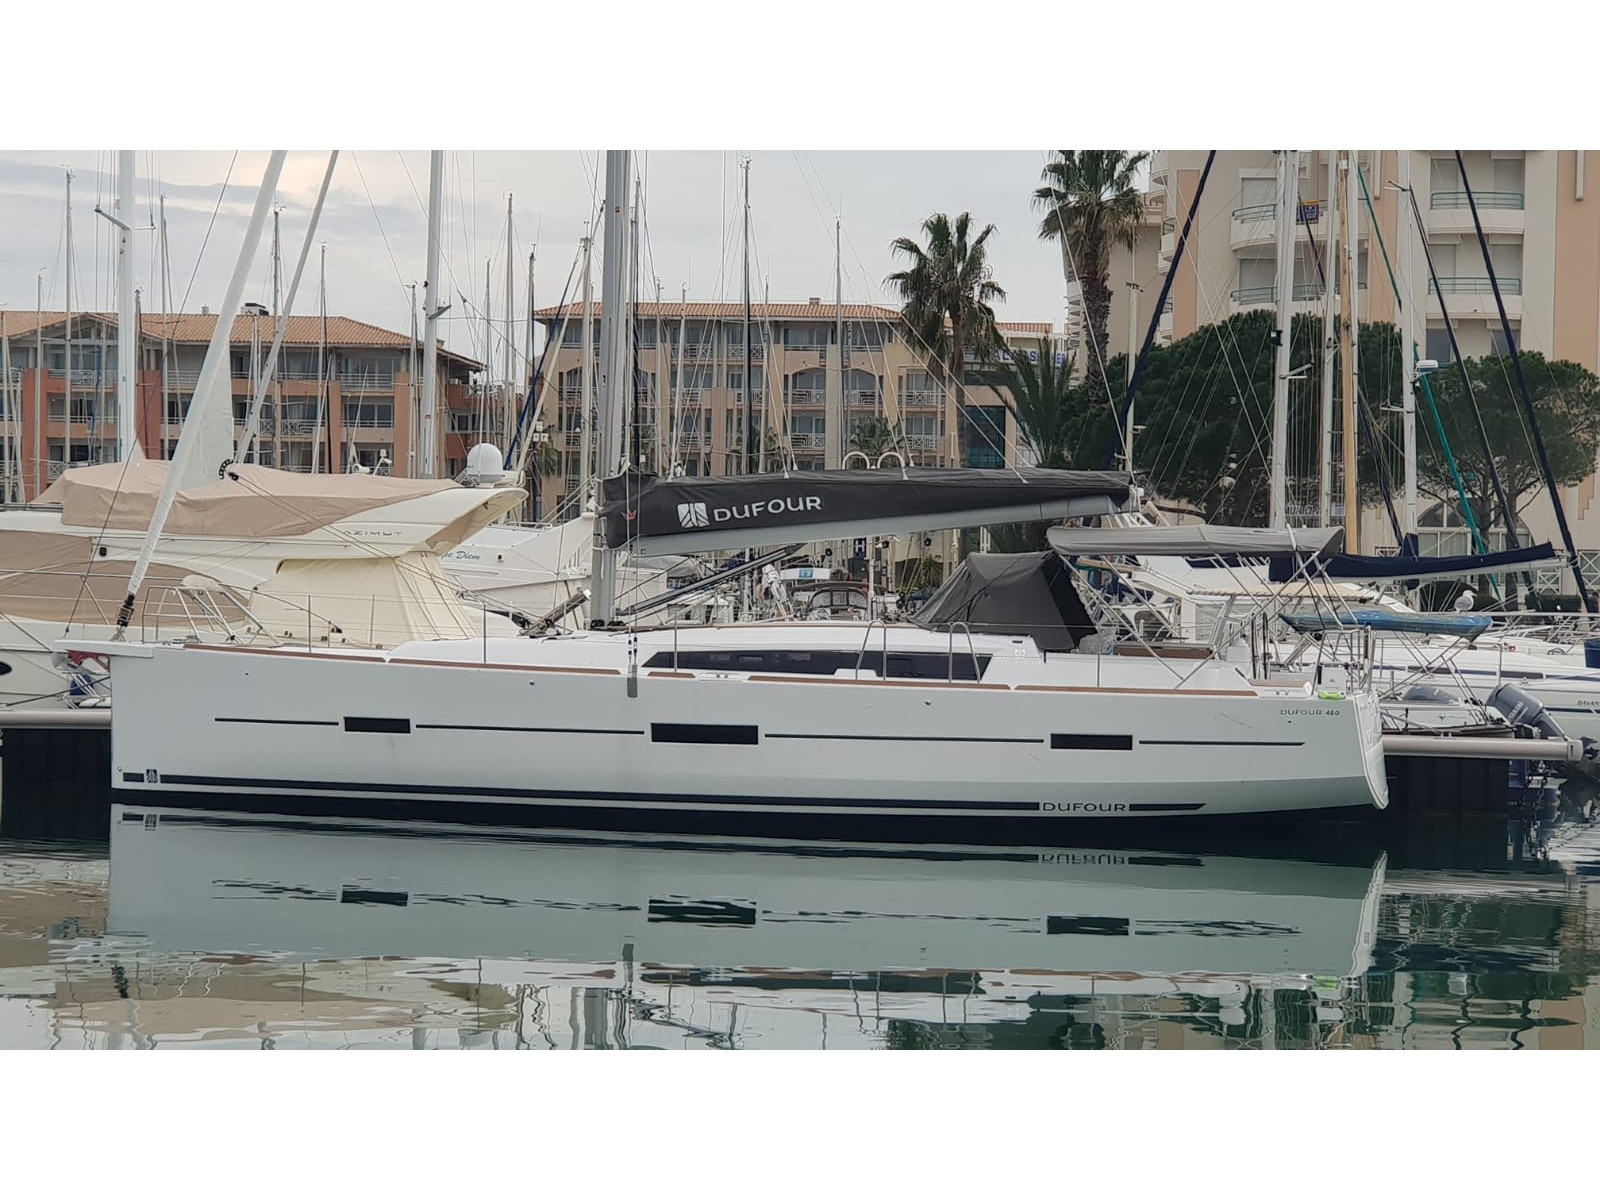 Dufour 460 - Yacht Charter Piombino & Boat hire in Italy Tuscany Piombino Salivoli 3